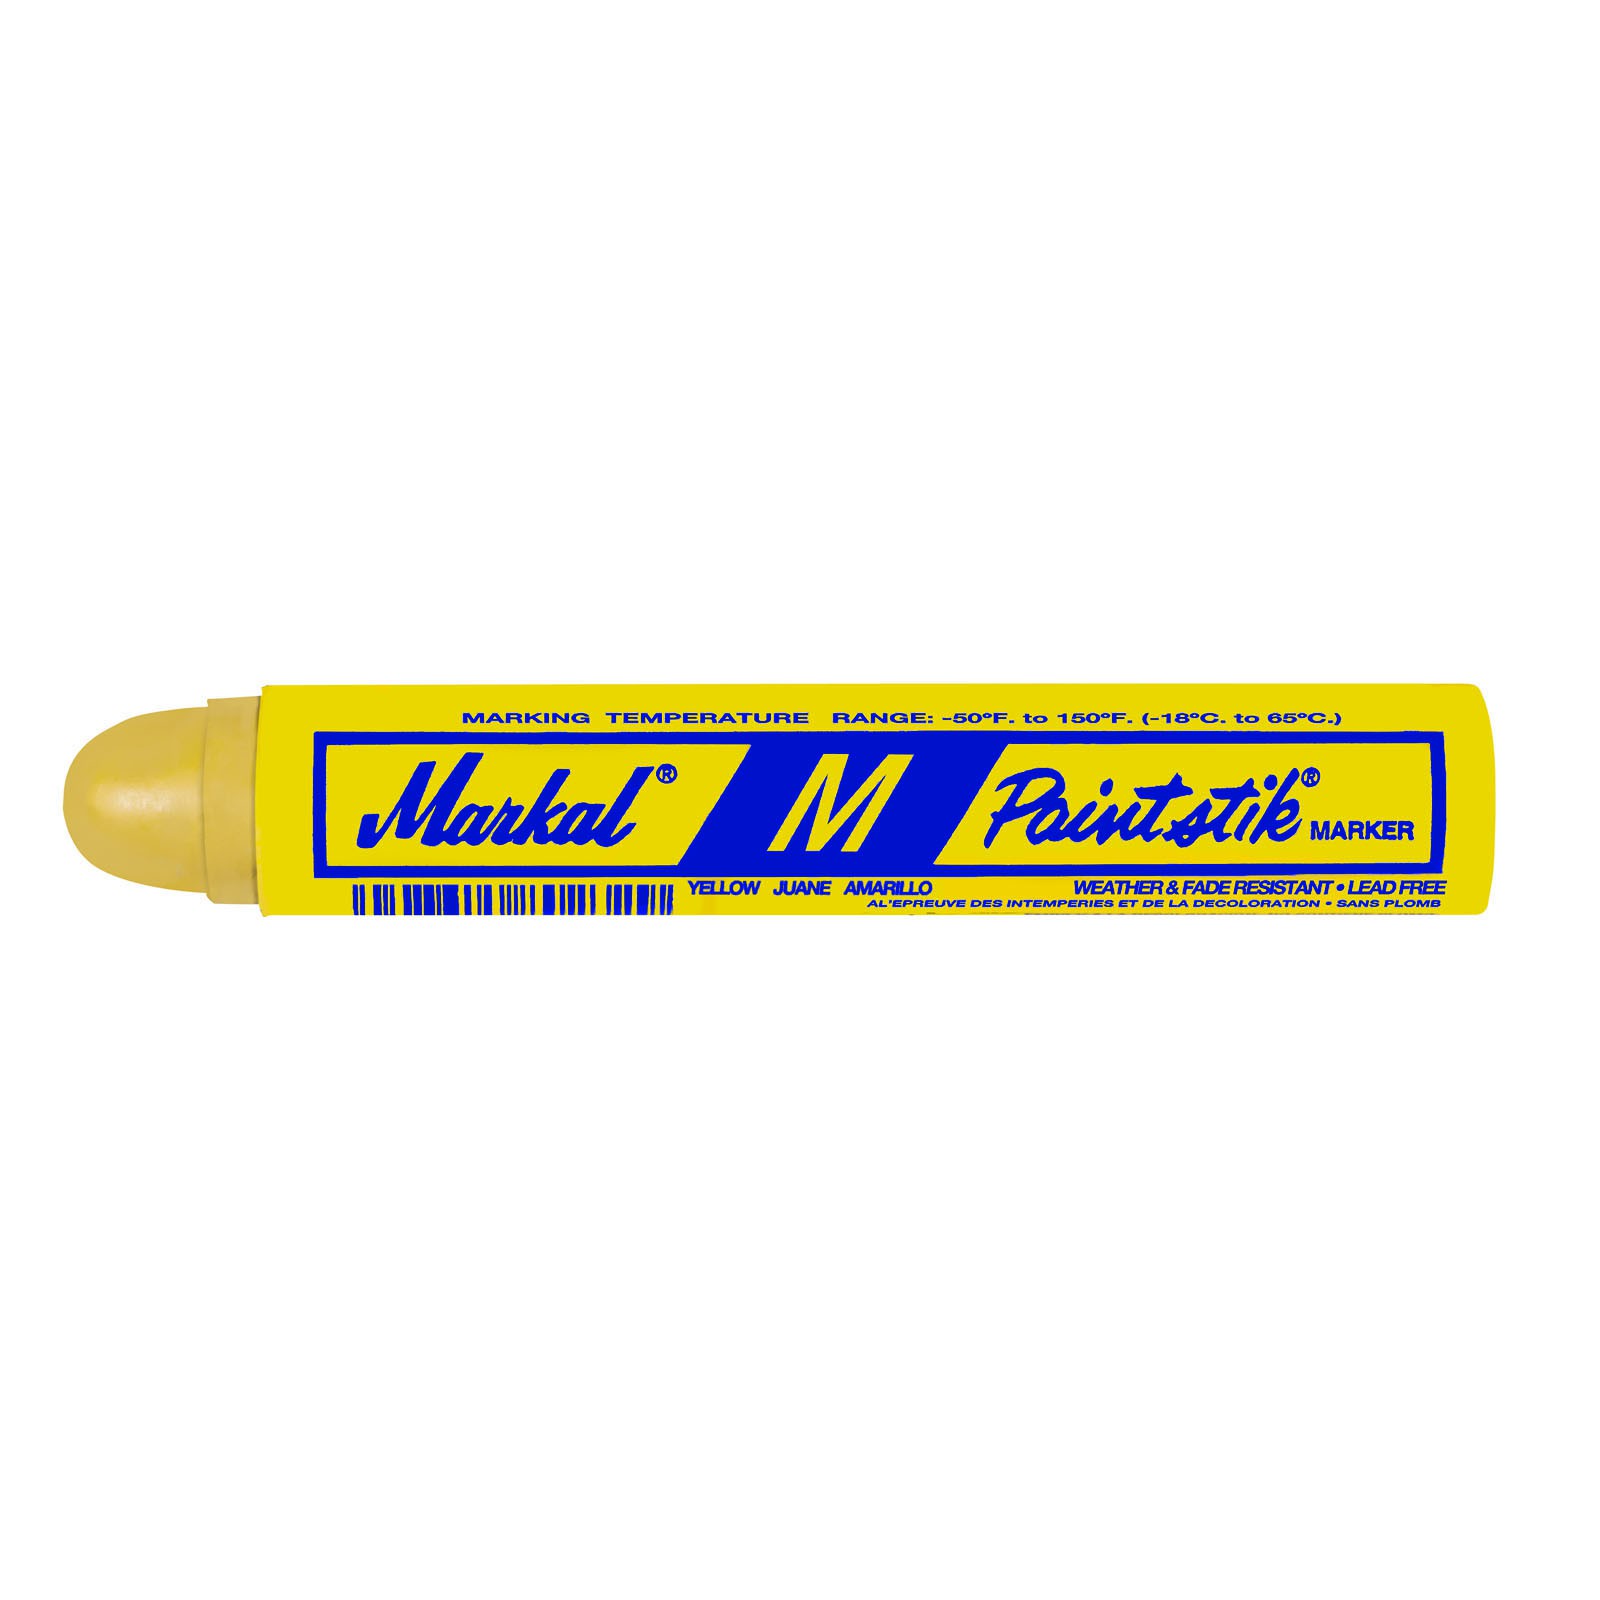 MARKAL M Festfarbenstift für hohe Temperaturen versch. Farben VPE 12 Stück Farbe:gelb von Markal